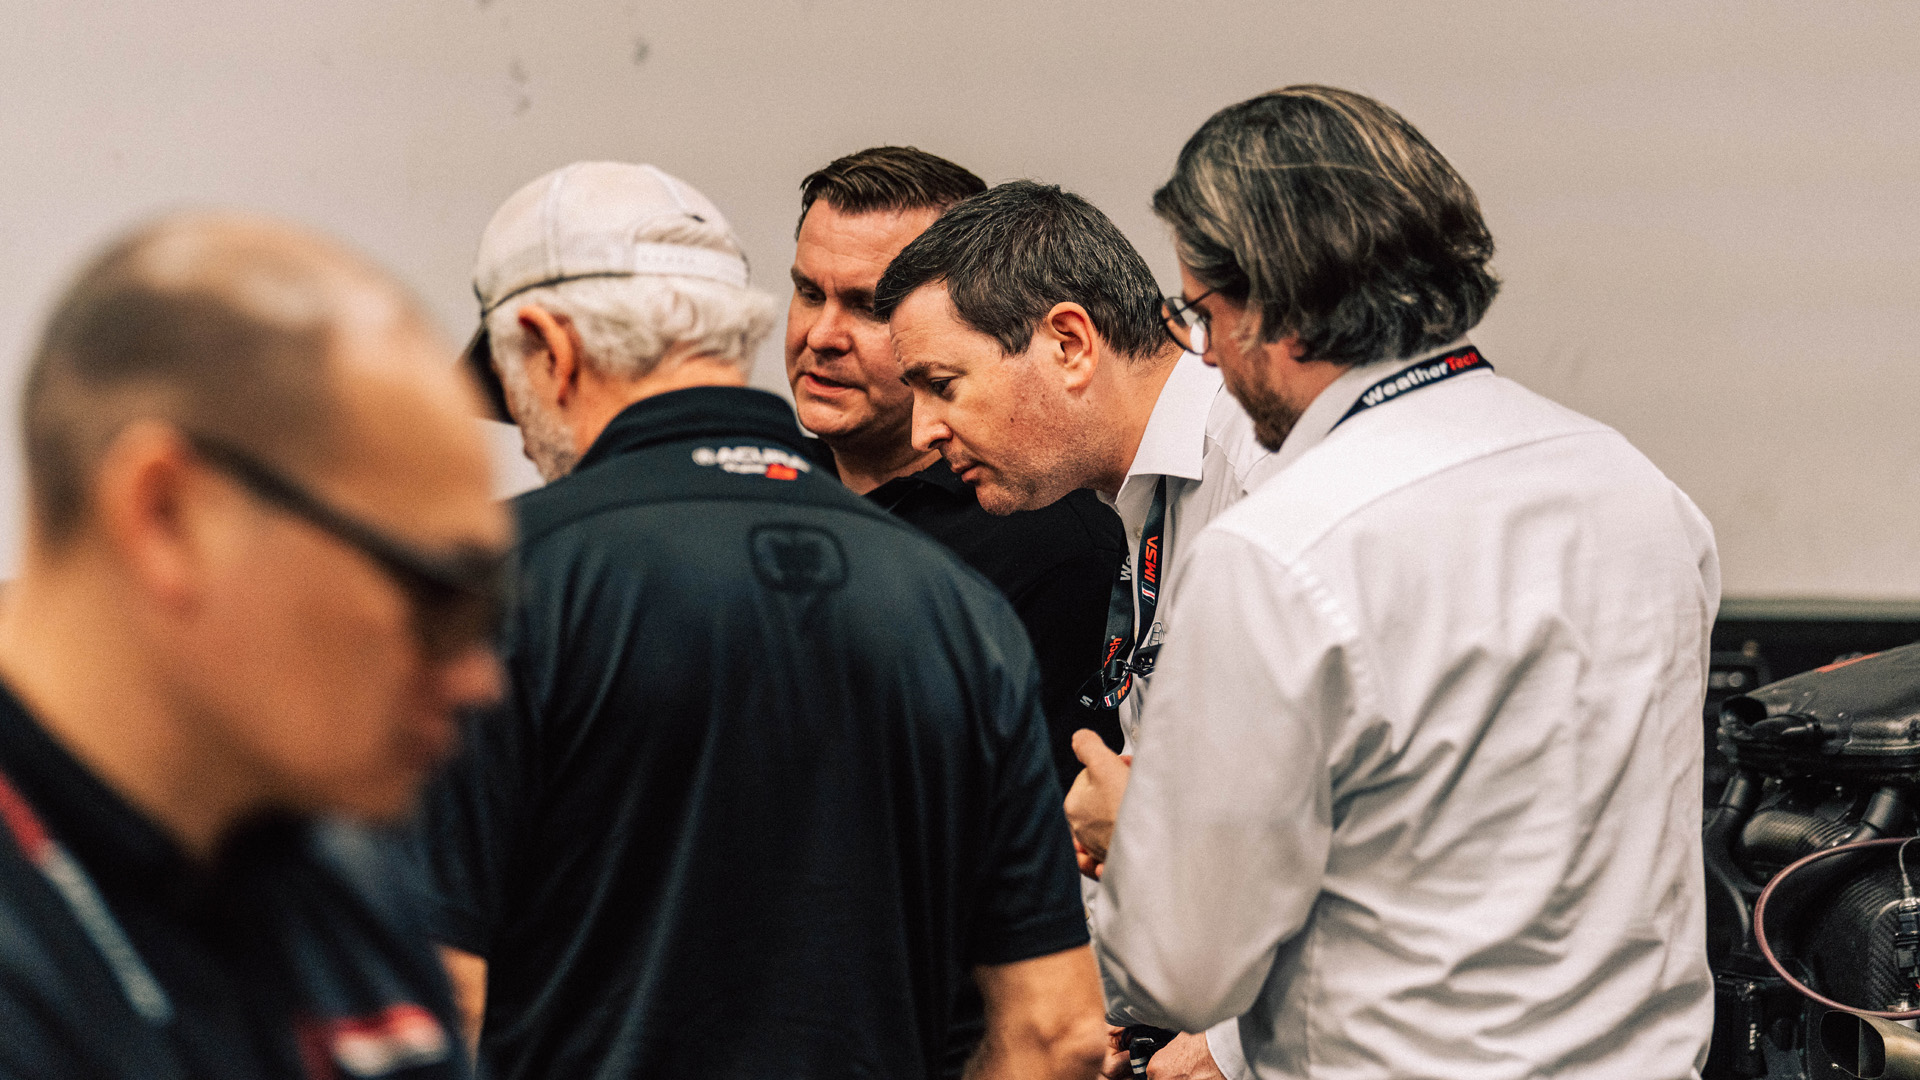 Karl Kloess, Vincent Parvaud, Tobias Knorsch at Daytona